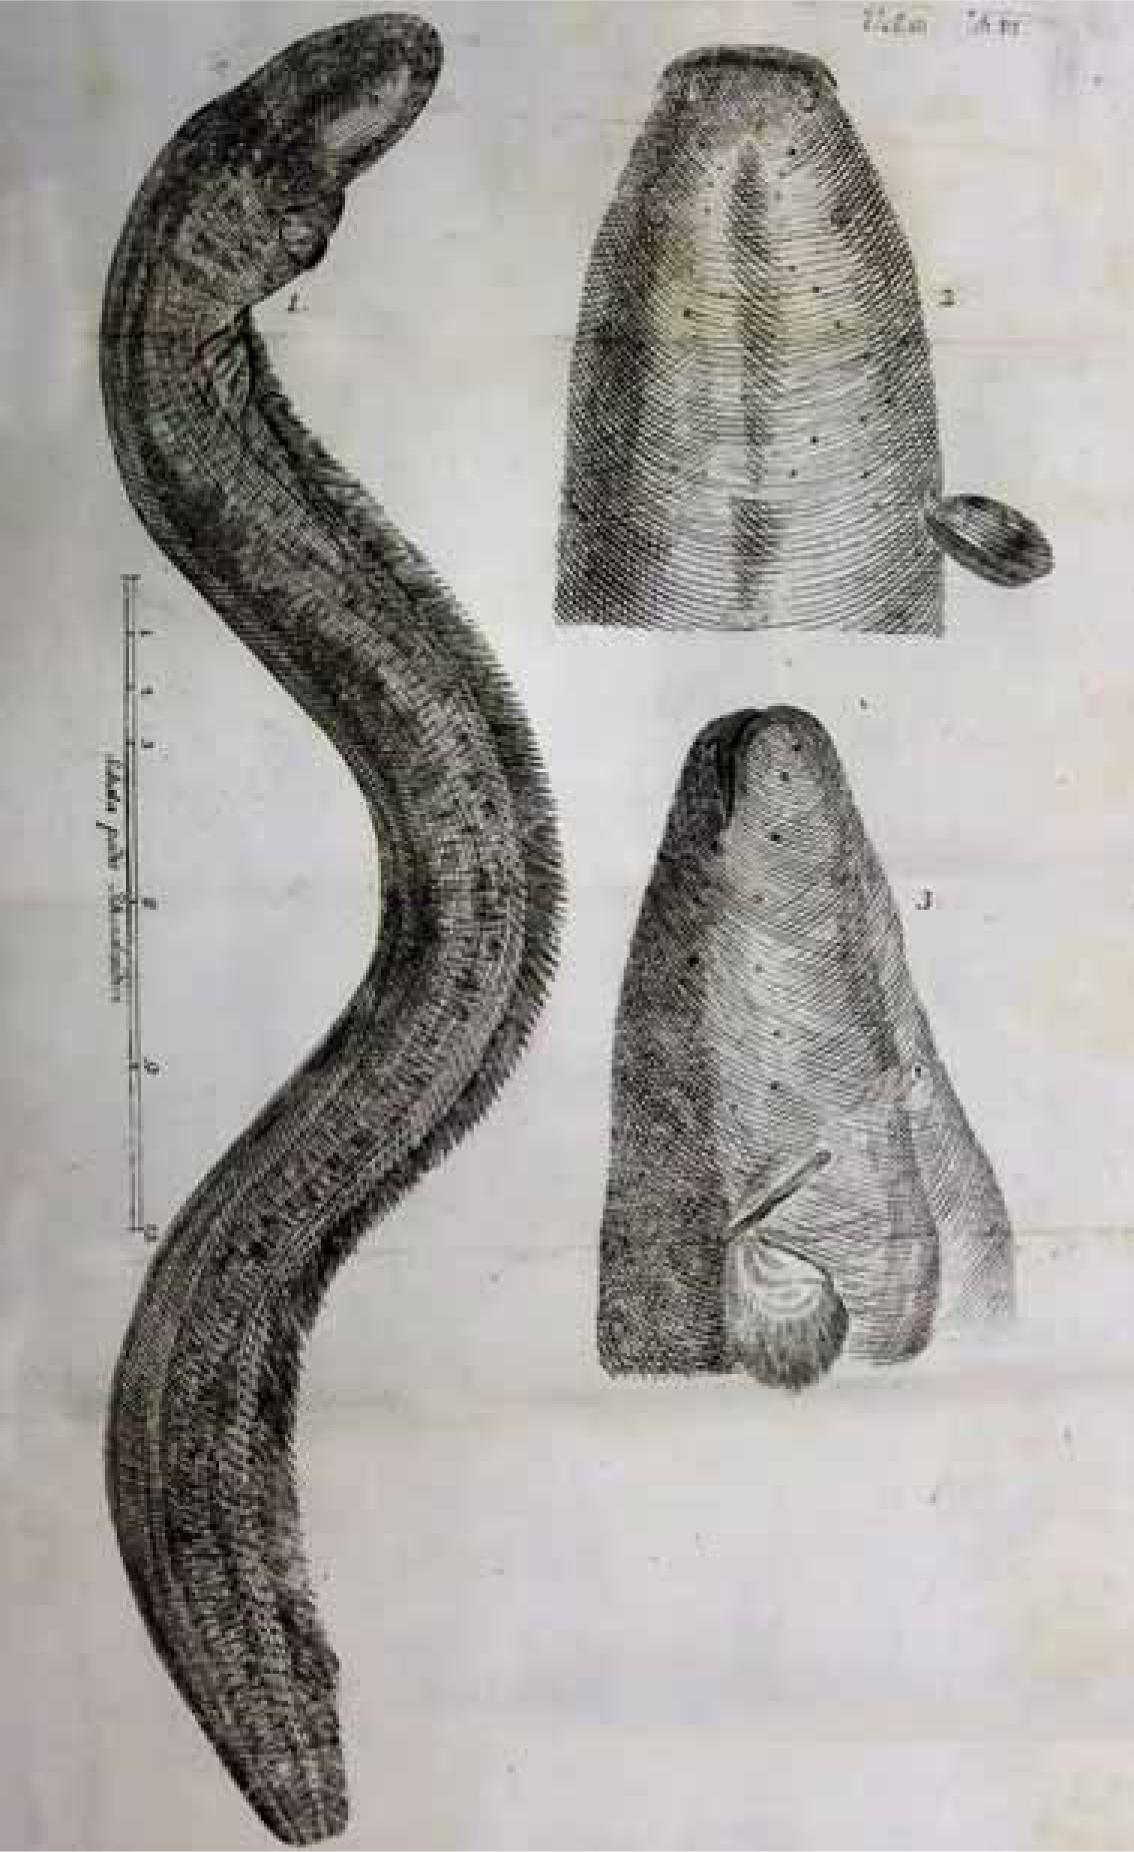 The tremble eel